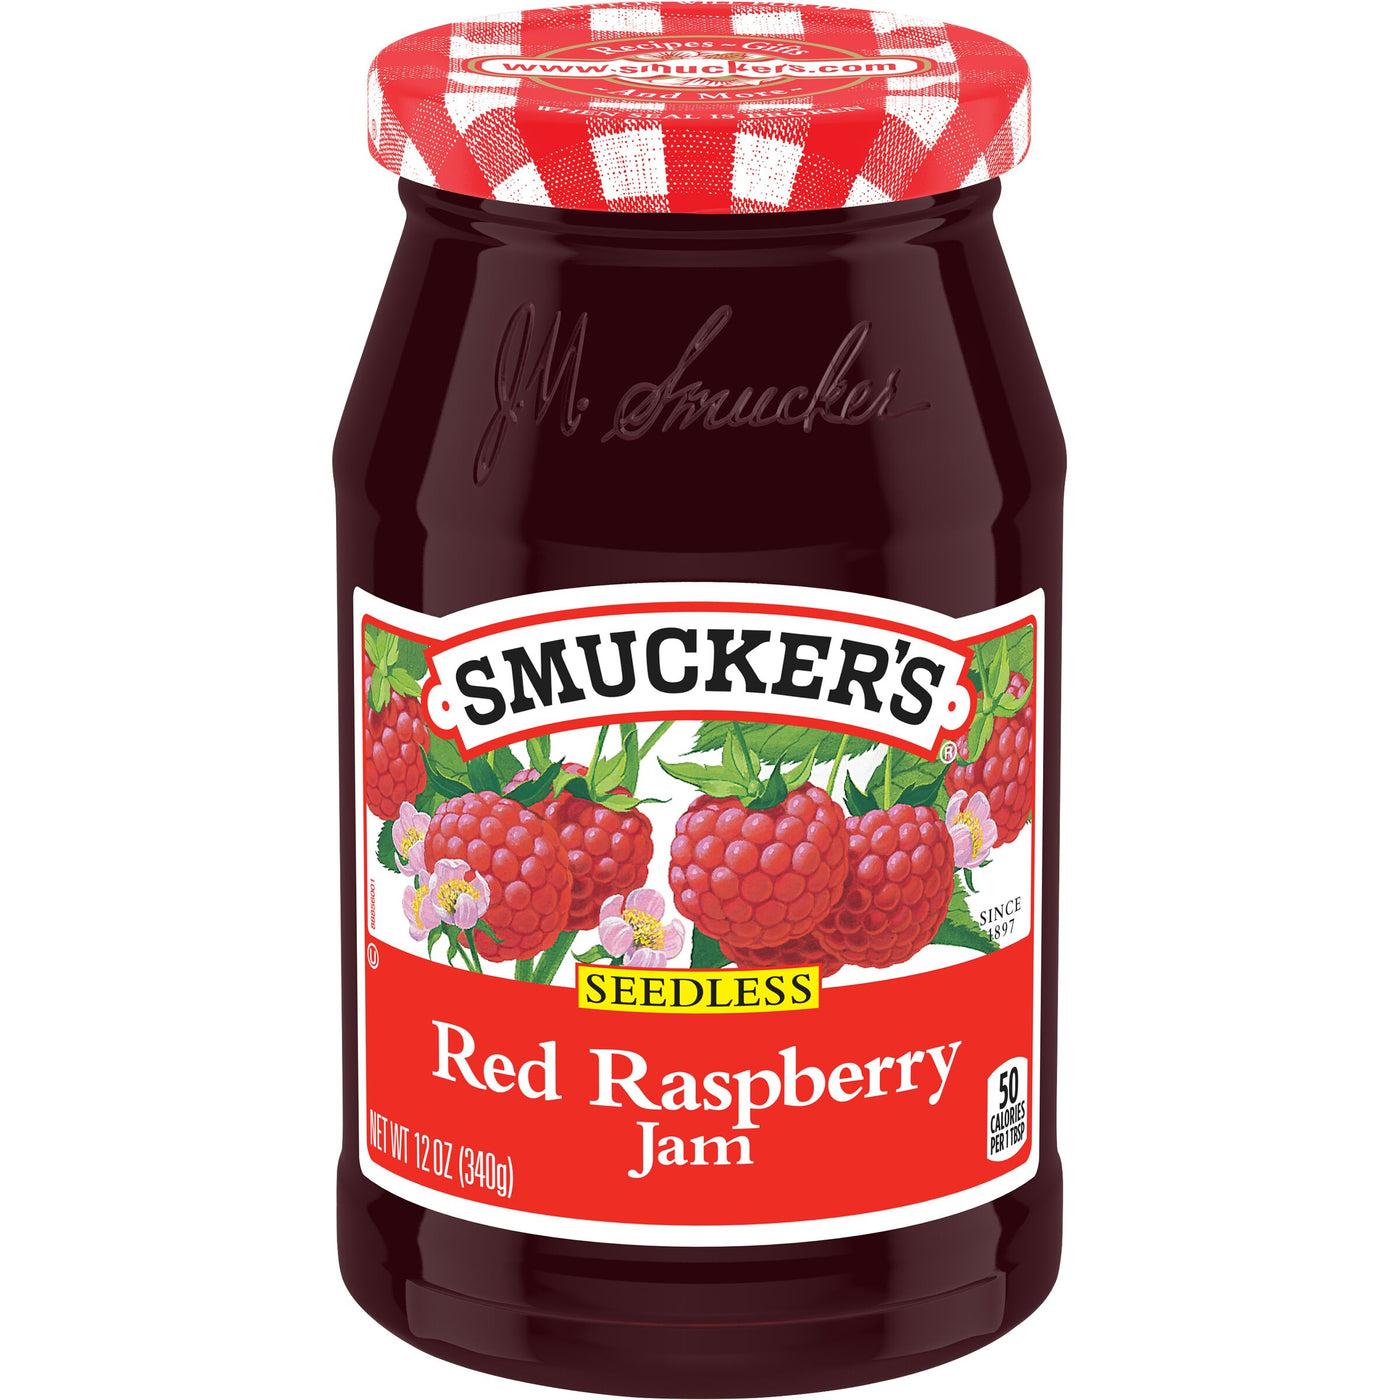 Smucker's Seedless Red Raspberry Jam